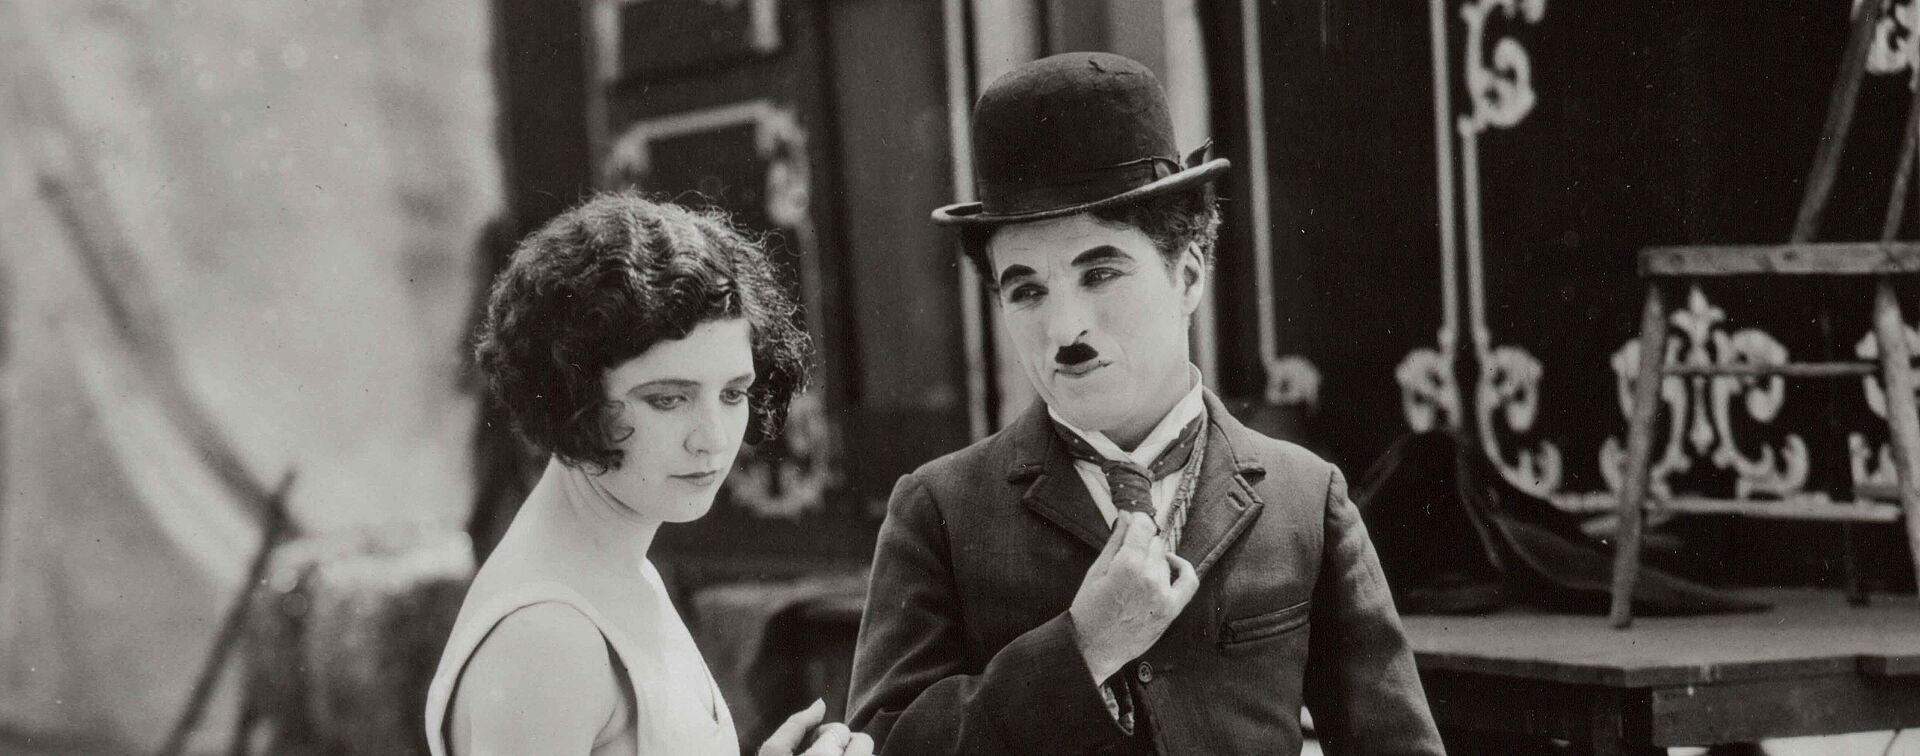 Charlie Chaplin blickt auf eine Frau. Hinter ihnen stehen Zirkuswagen.